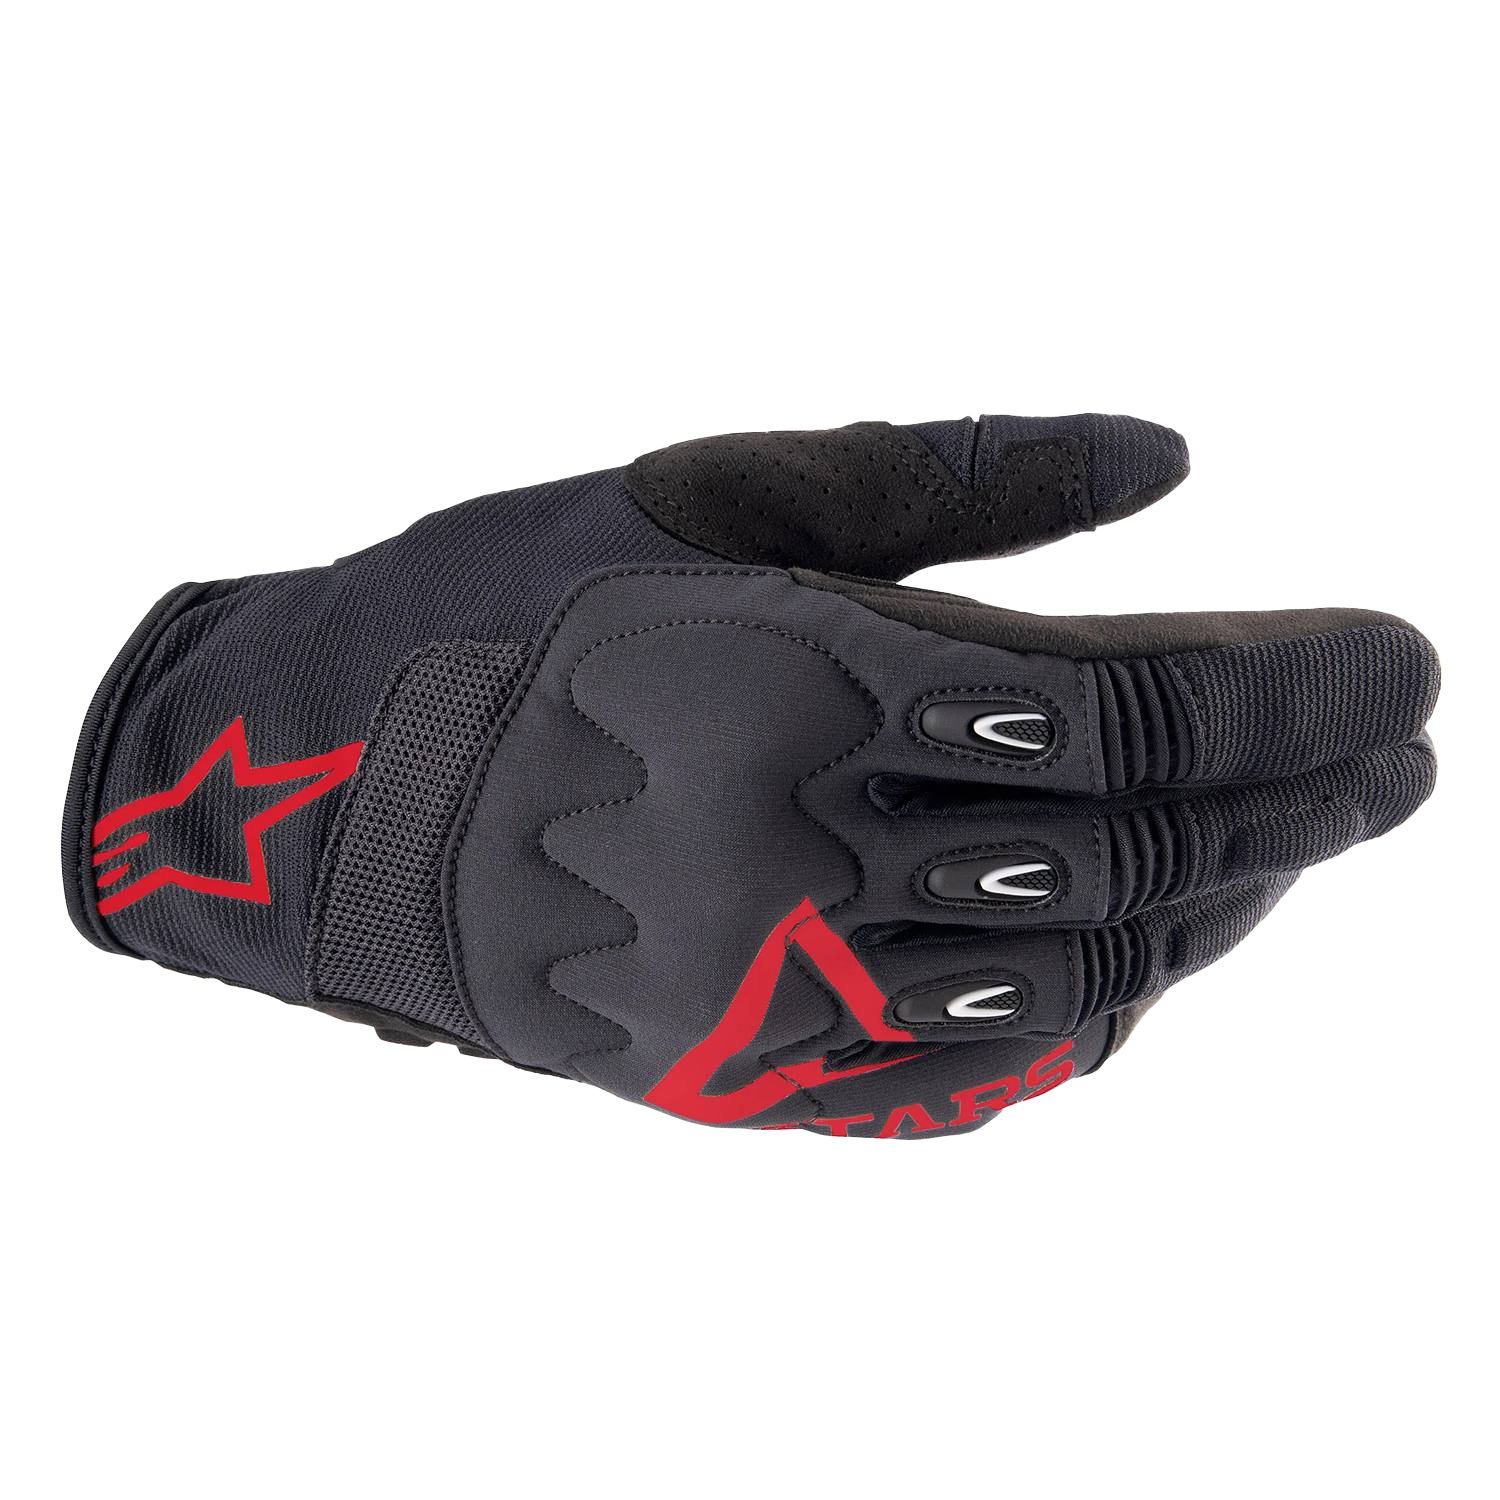 Image of Alpinestars Techdura Gloves Fire Red Black Größe L